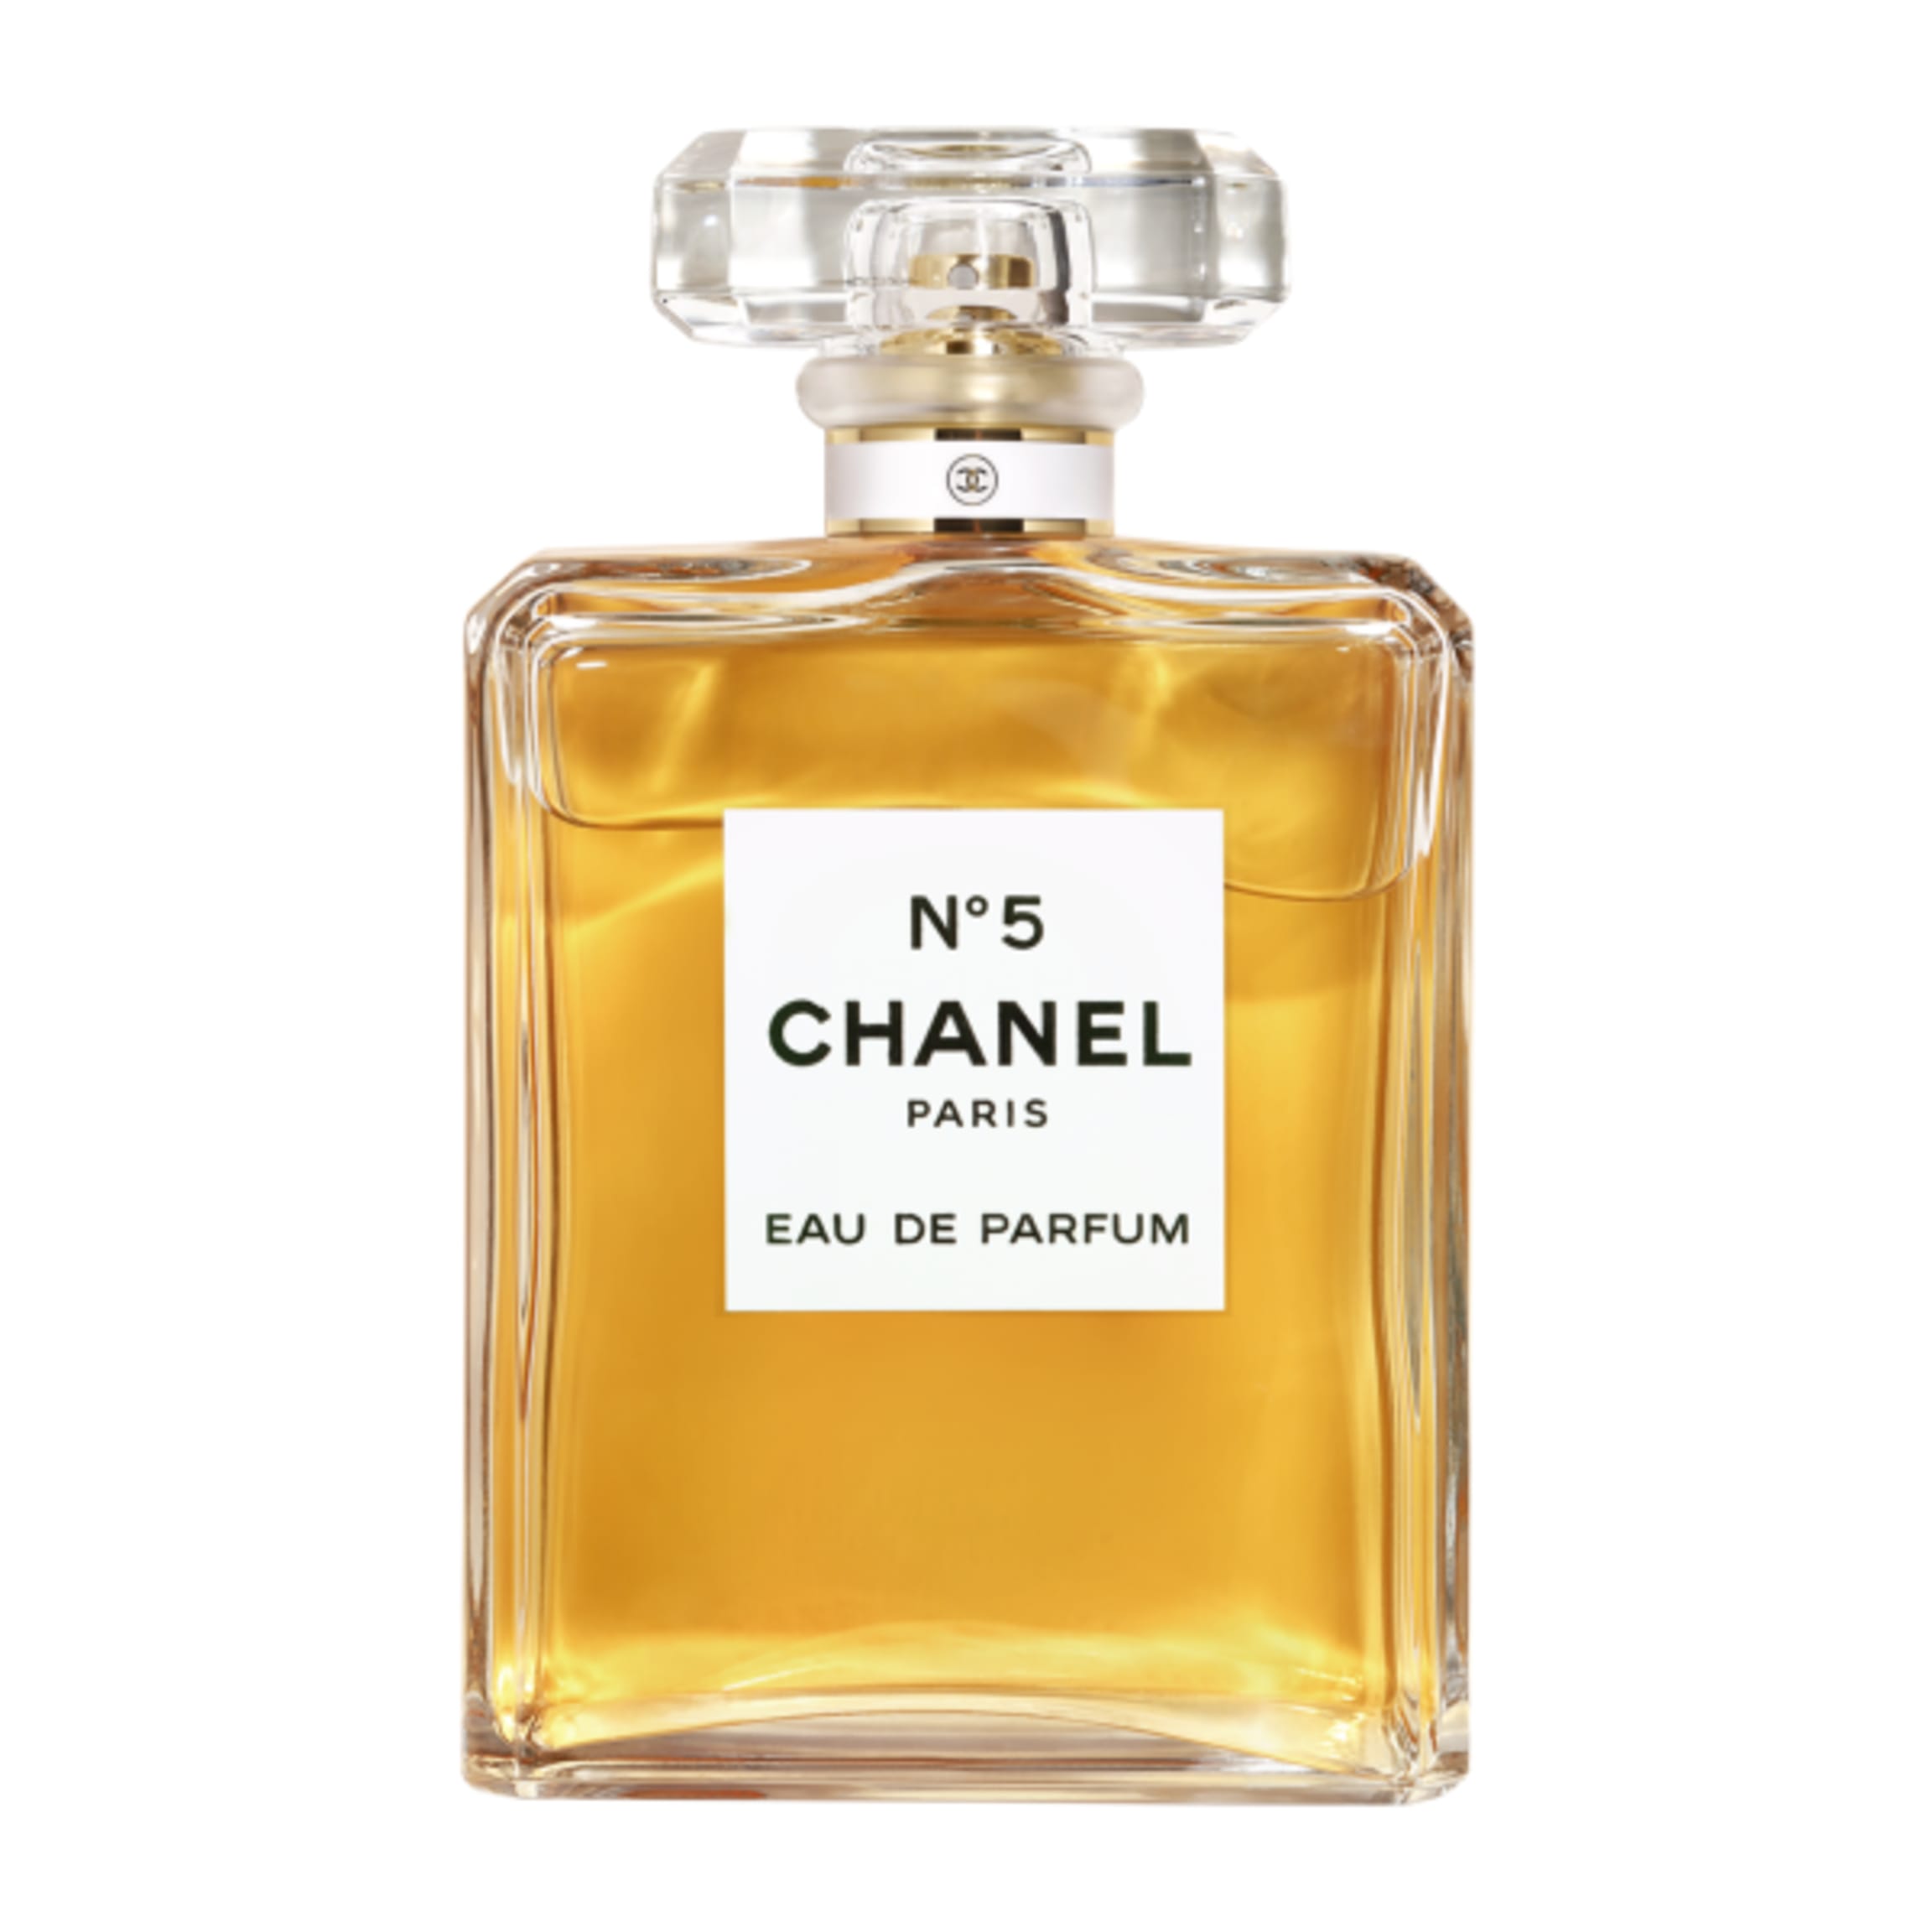 Chanel N°5 by Chanel for Women - Eau de Parfum, 100 ml